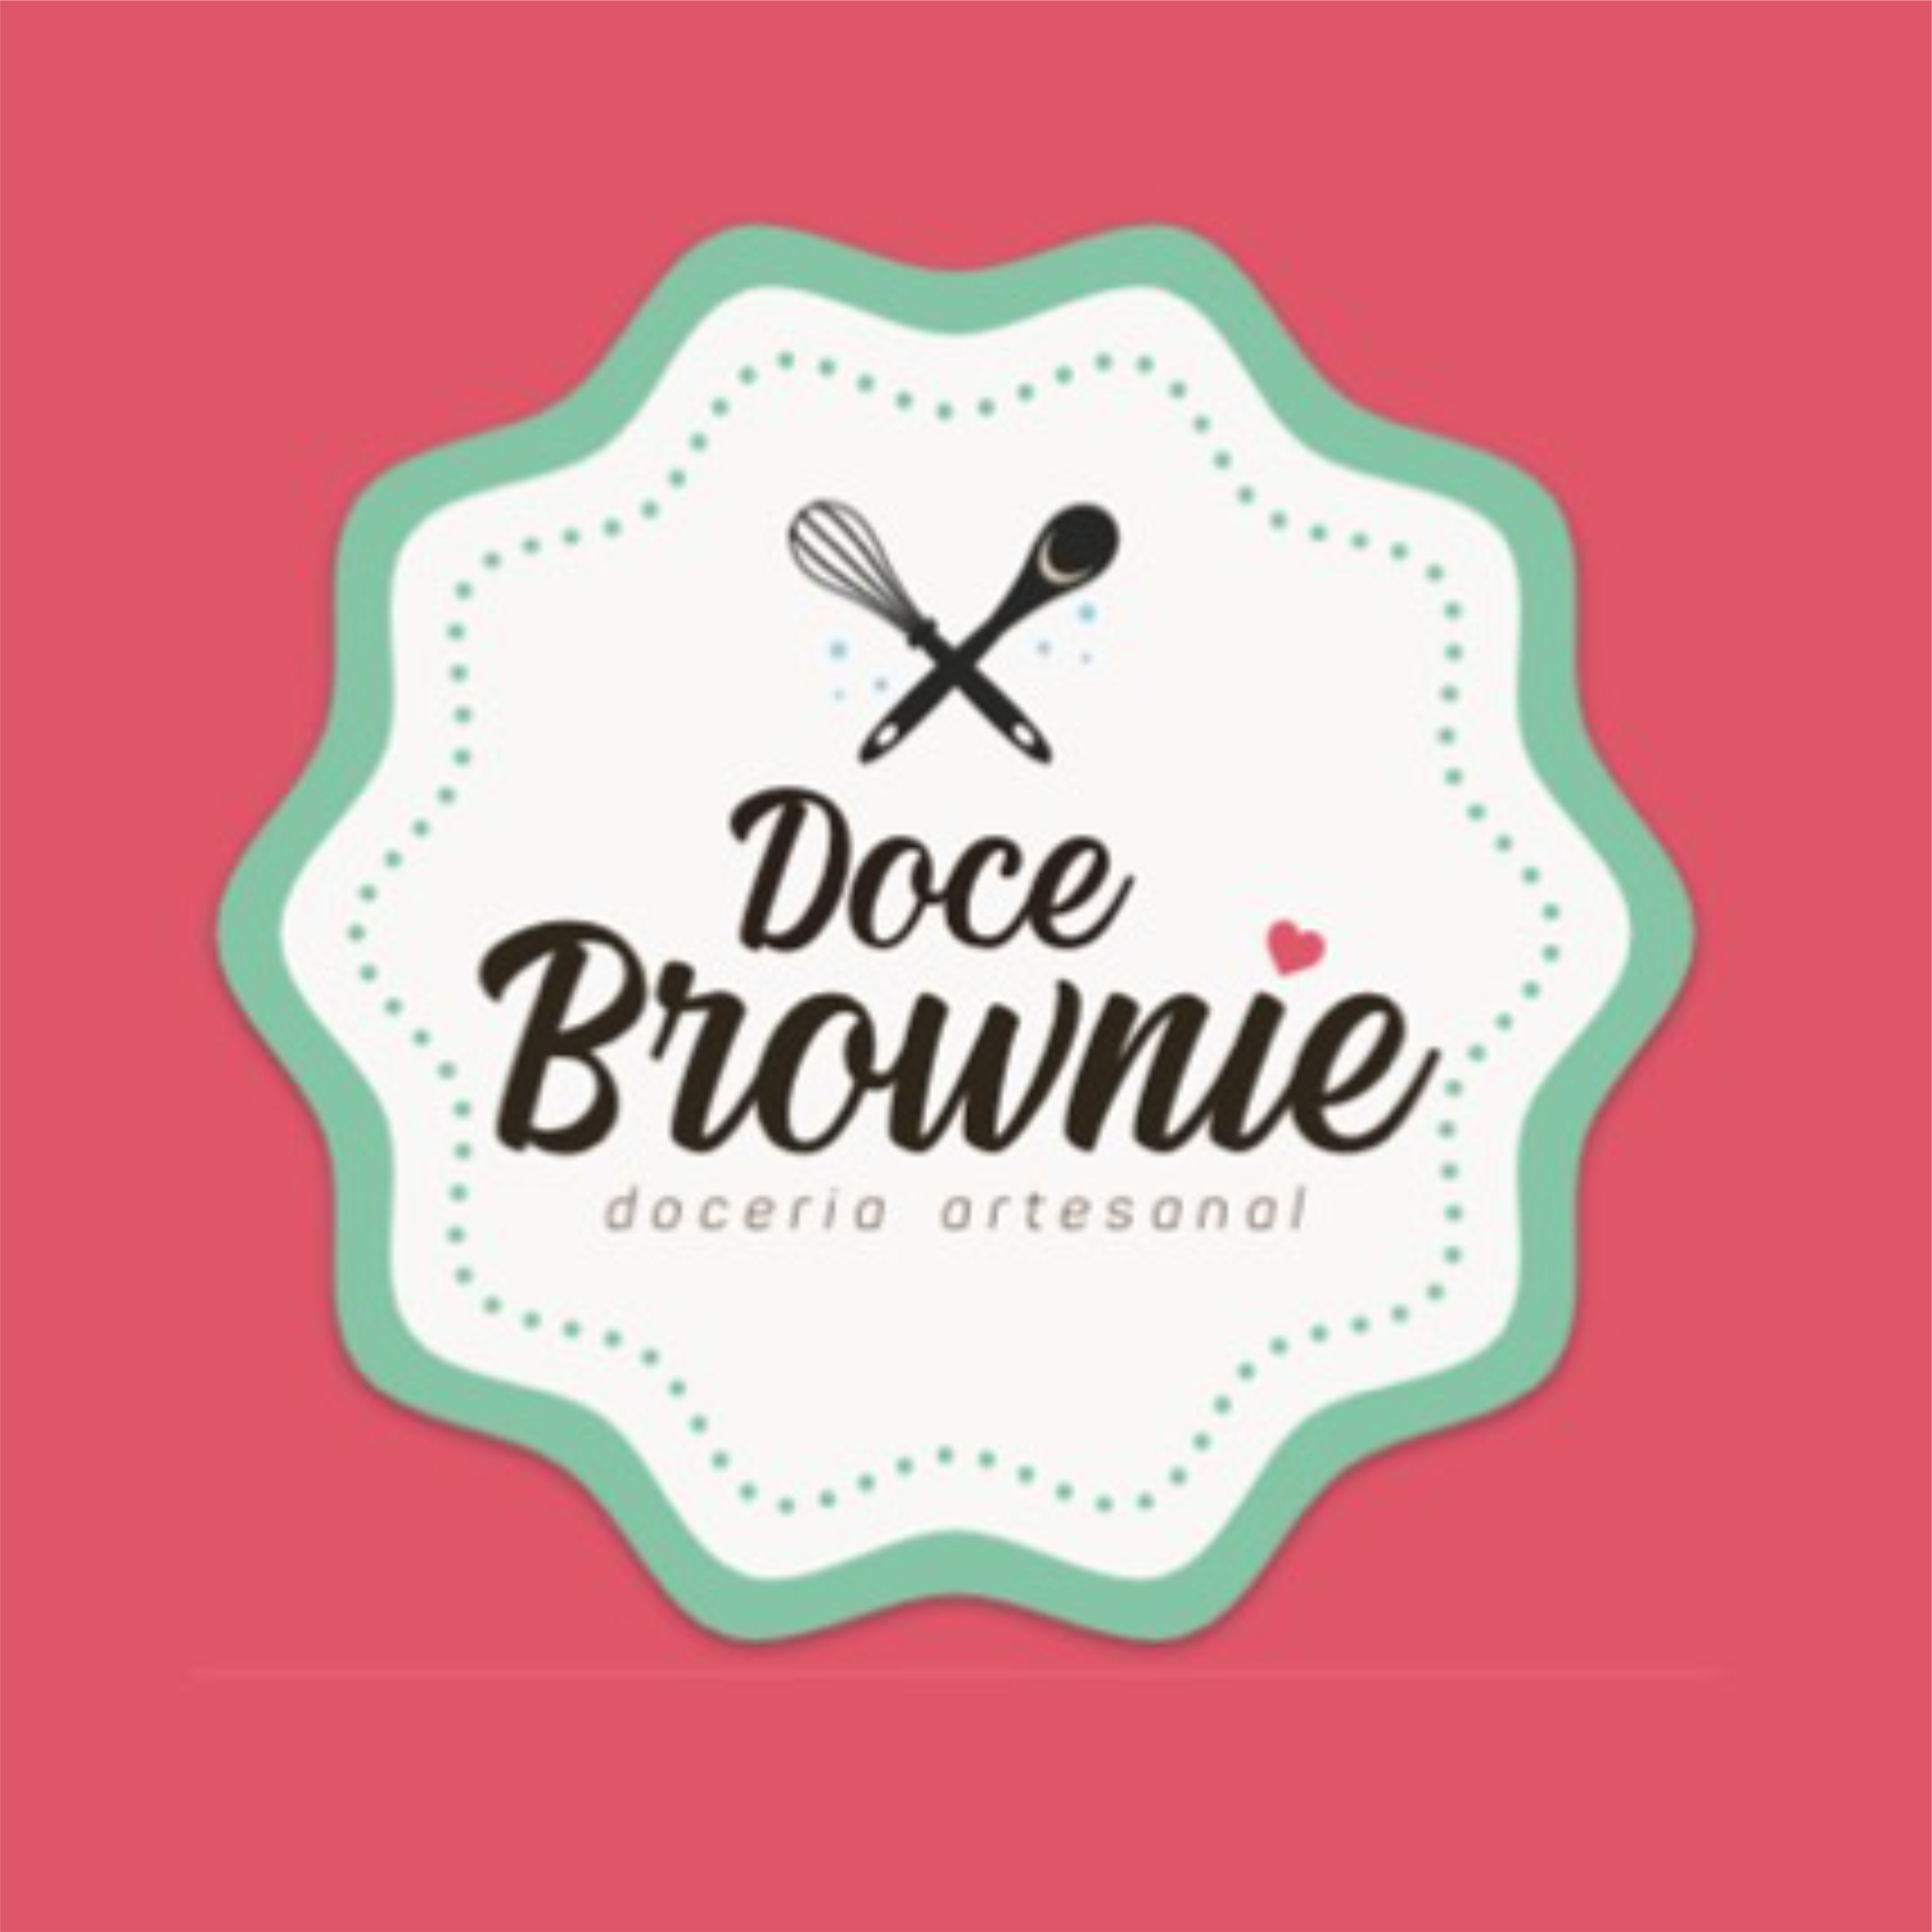 Doce Brownie - Doceria Artesanal